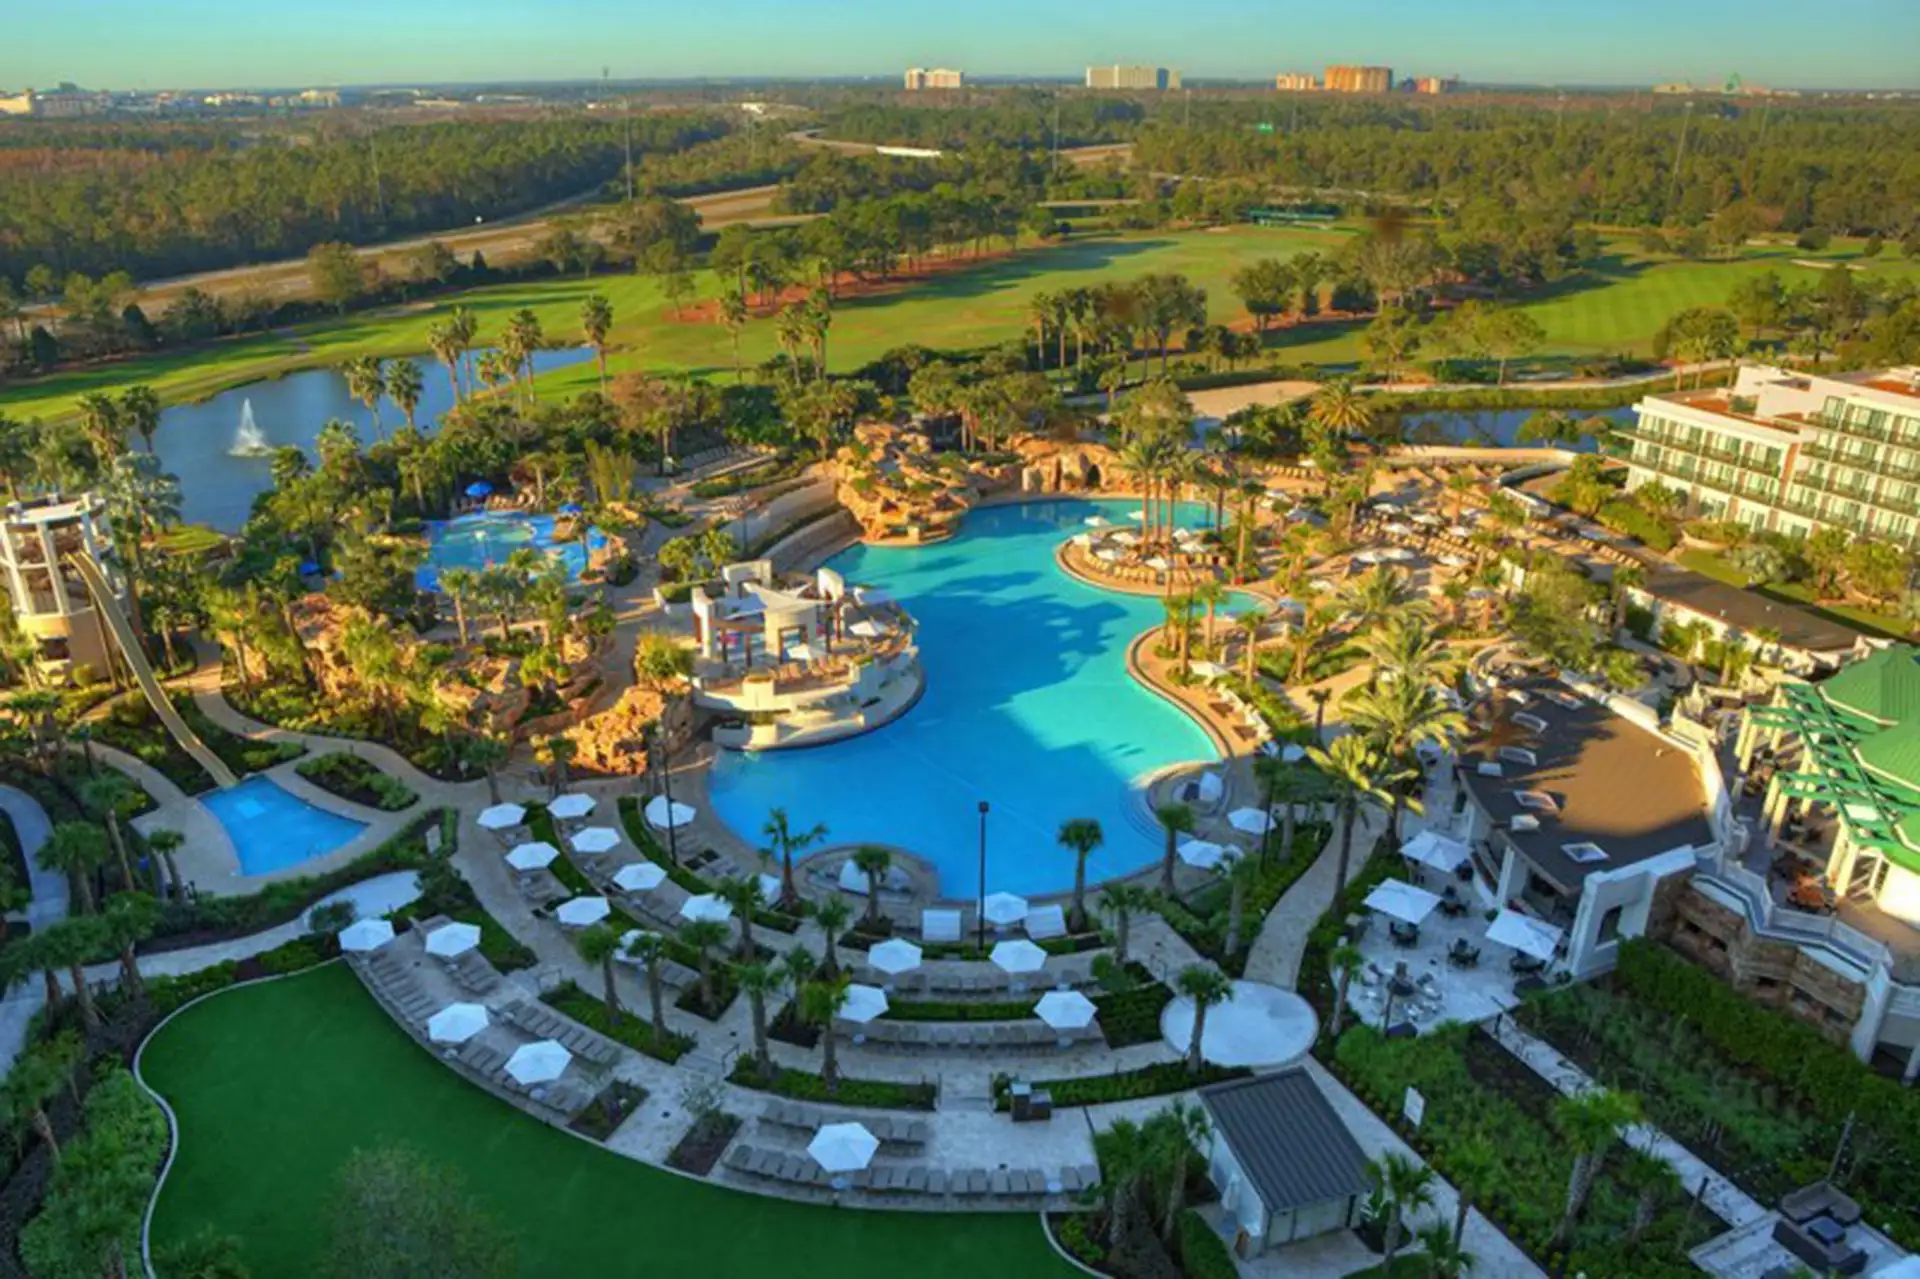 Orlando World Center Marriott Resort in Florida